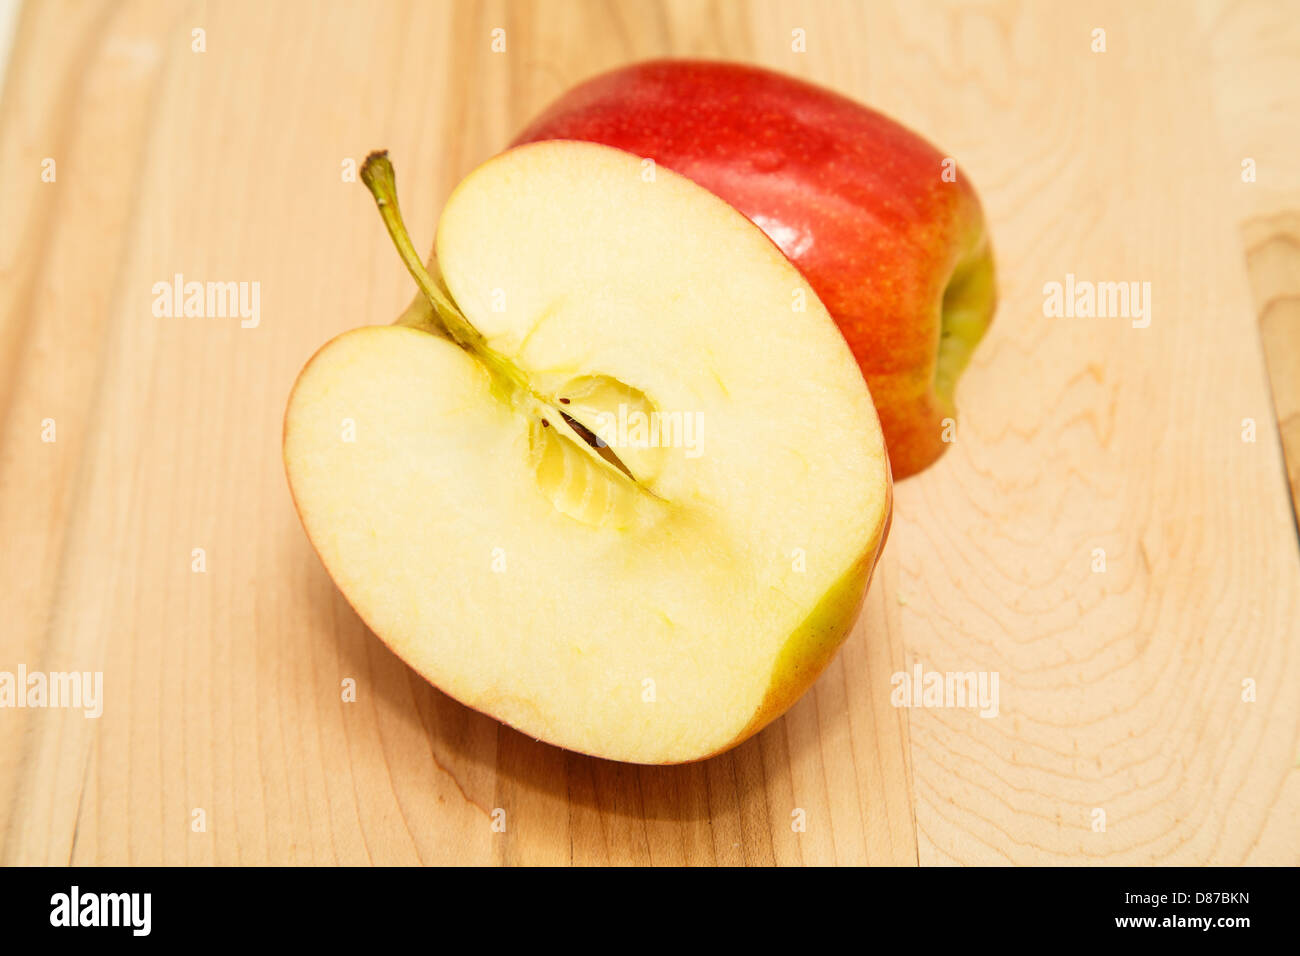 Fresche, mela rossa tagliata a metà su un legno tagliere Foto Stock